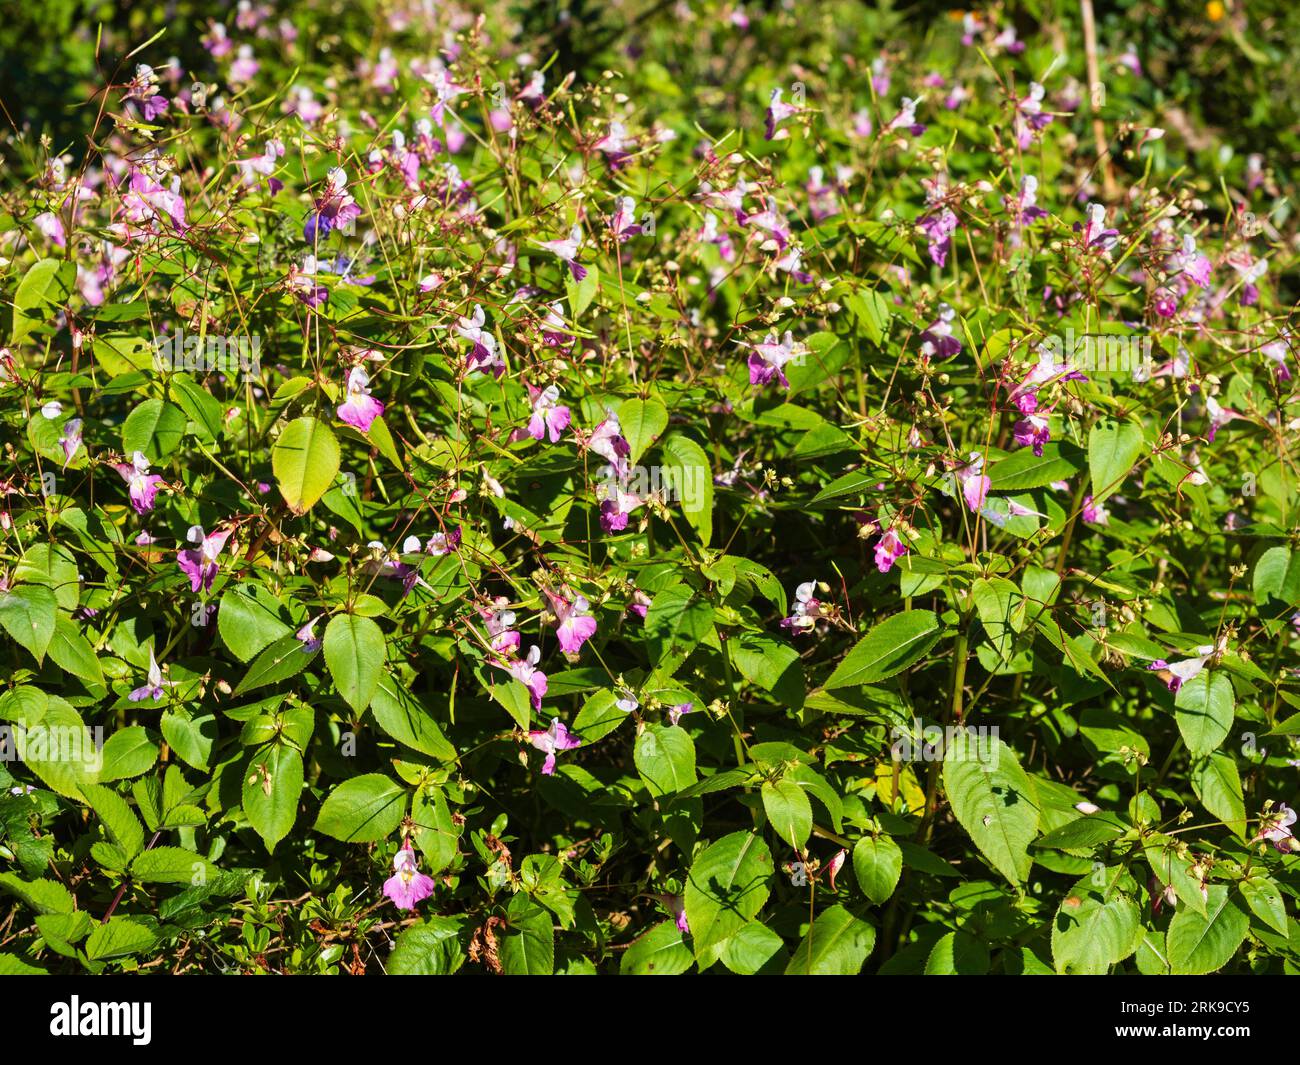 Boschetto della dura e affollata lizzie, Impatiens arguta, fiorito in tarda estate Foto Stock